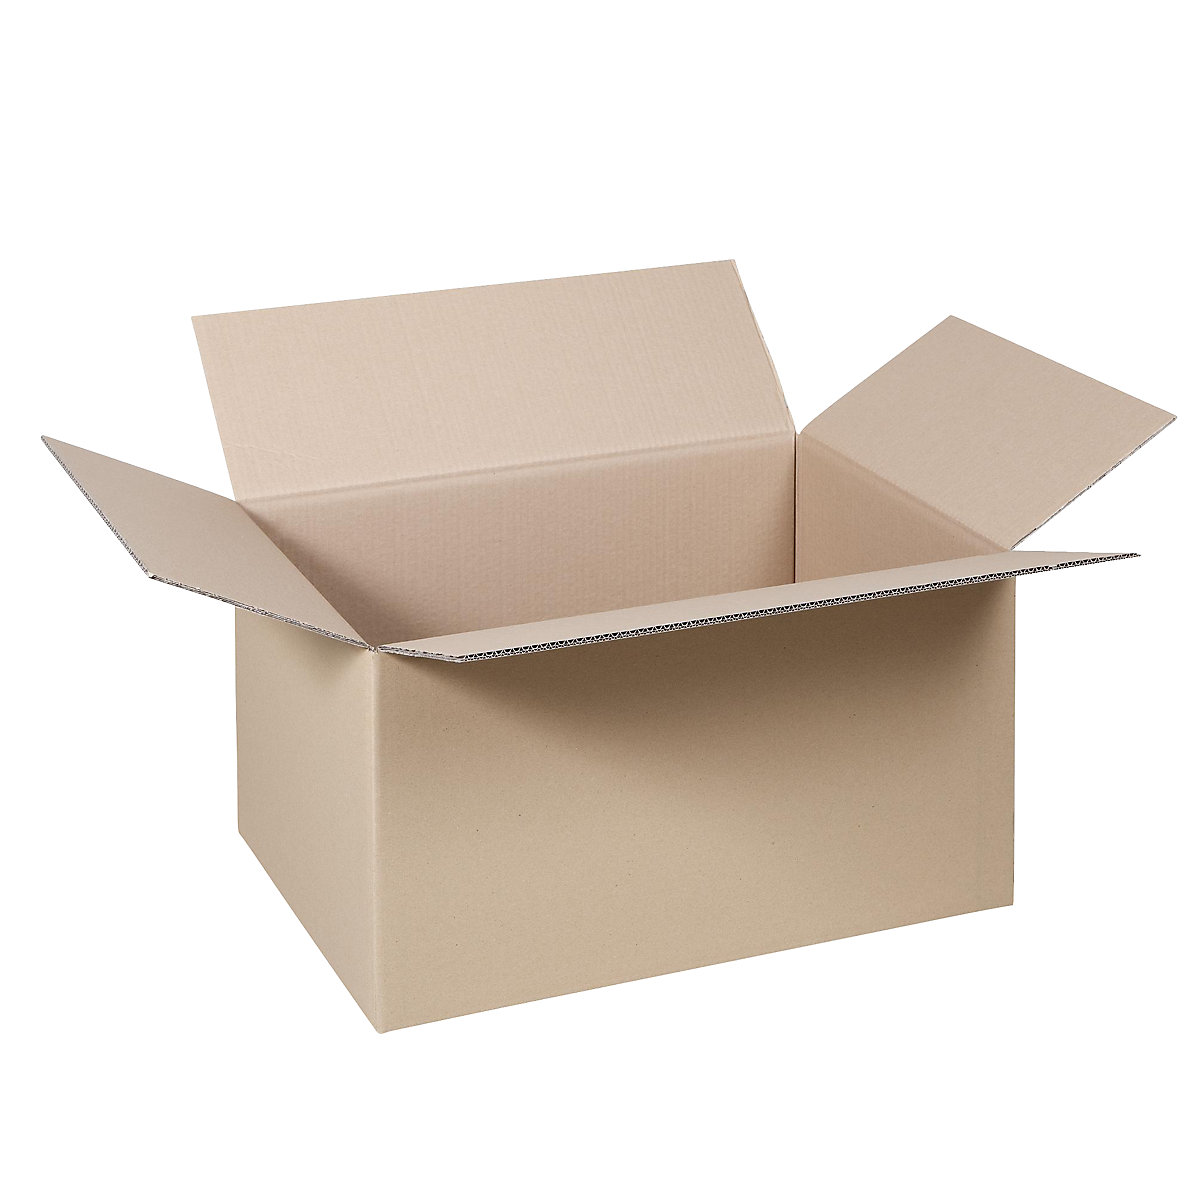 Cutie de carton pliantă, FEFCO 0201, cu 2 straturi de carton ondulat, dimensiuni interioare 600 x 400 x 300 mm, amb. 50 buc.-26